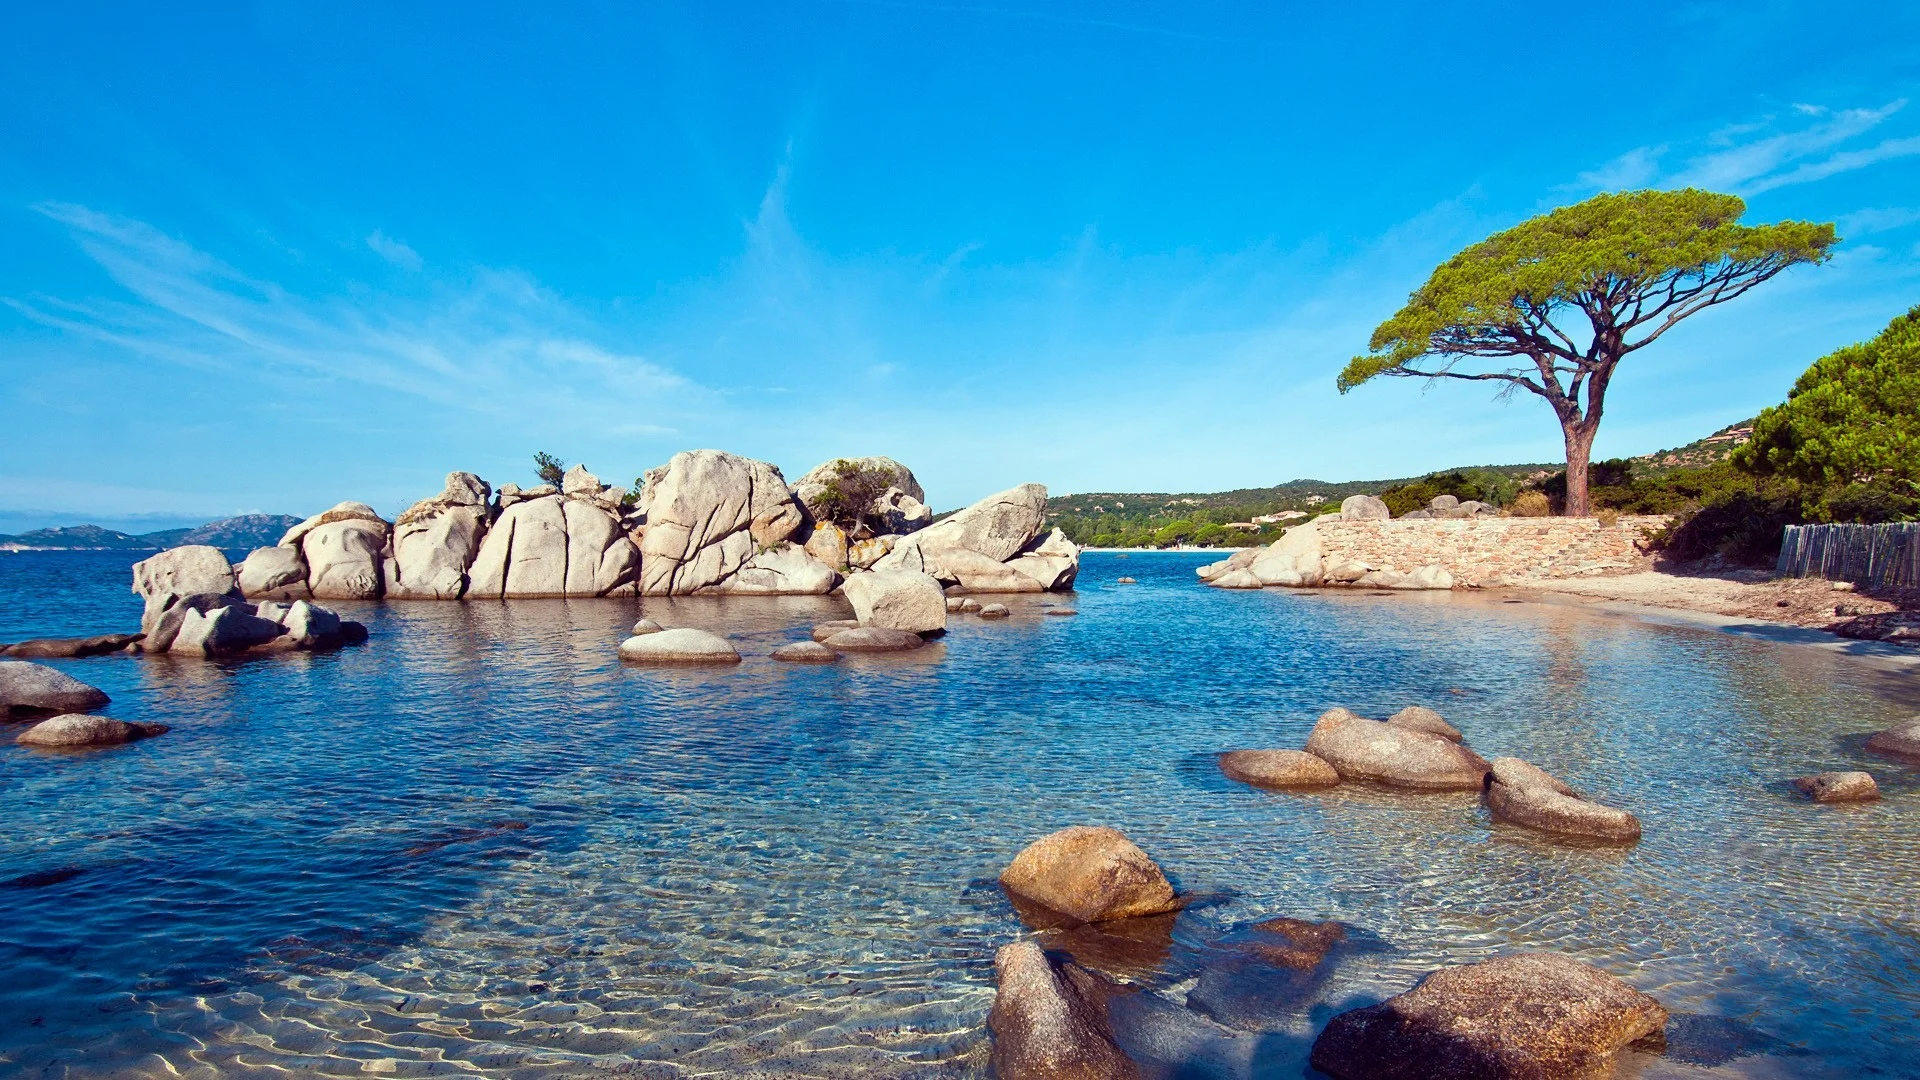 Bãi biển Palombaggia: Trên đảo đẹp nhất của Pháp, bạn sẽ tìm thấy bãi biển Palombaggia với khu vực có cát trắng, nước xanh và rừng cây bao phủ xung quanh. Hình ảnh vô cùng ấn tượng về bãi biển này sẽ khiến bạn chợt muốn đặt vé máy bay để đến đó ngay lập tức! 